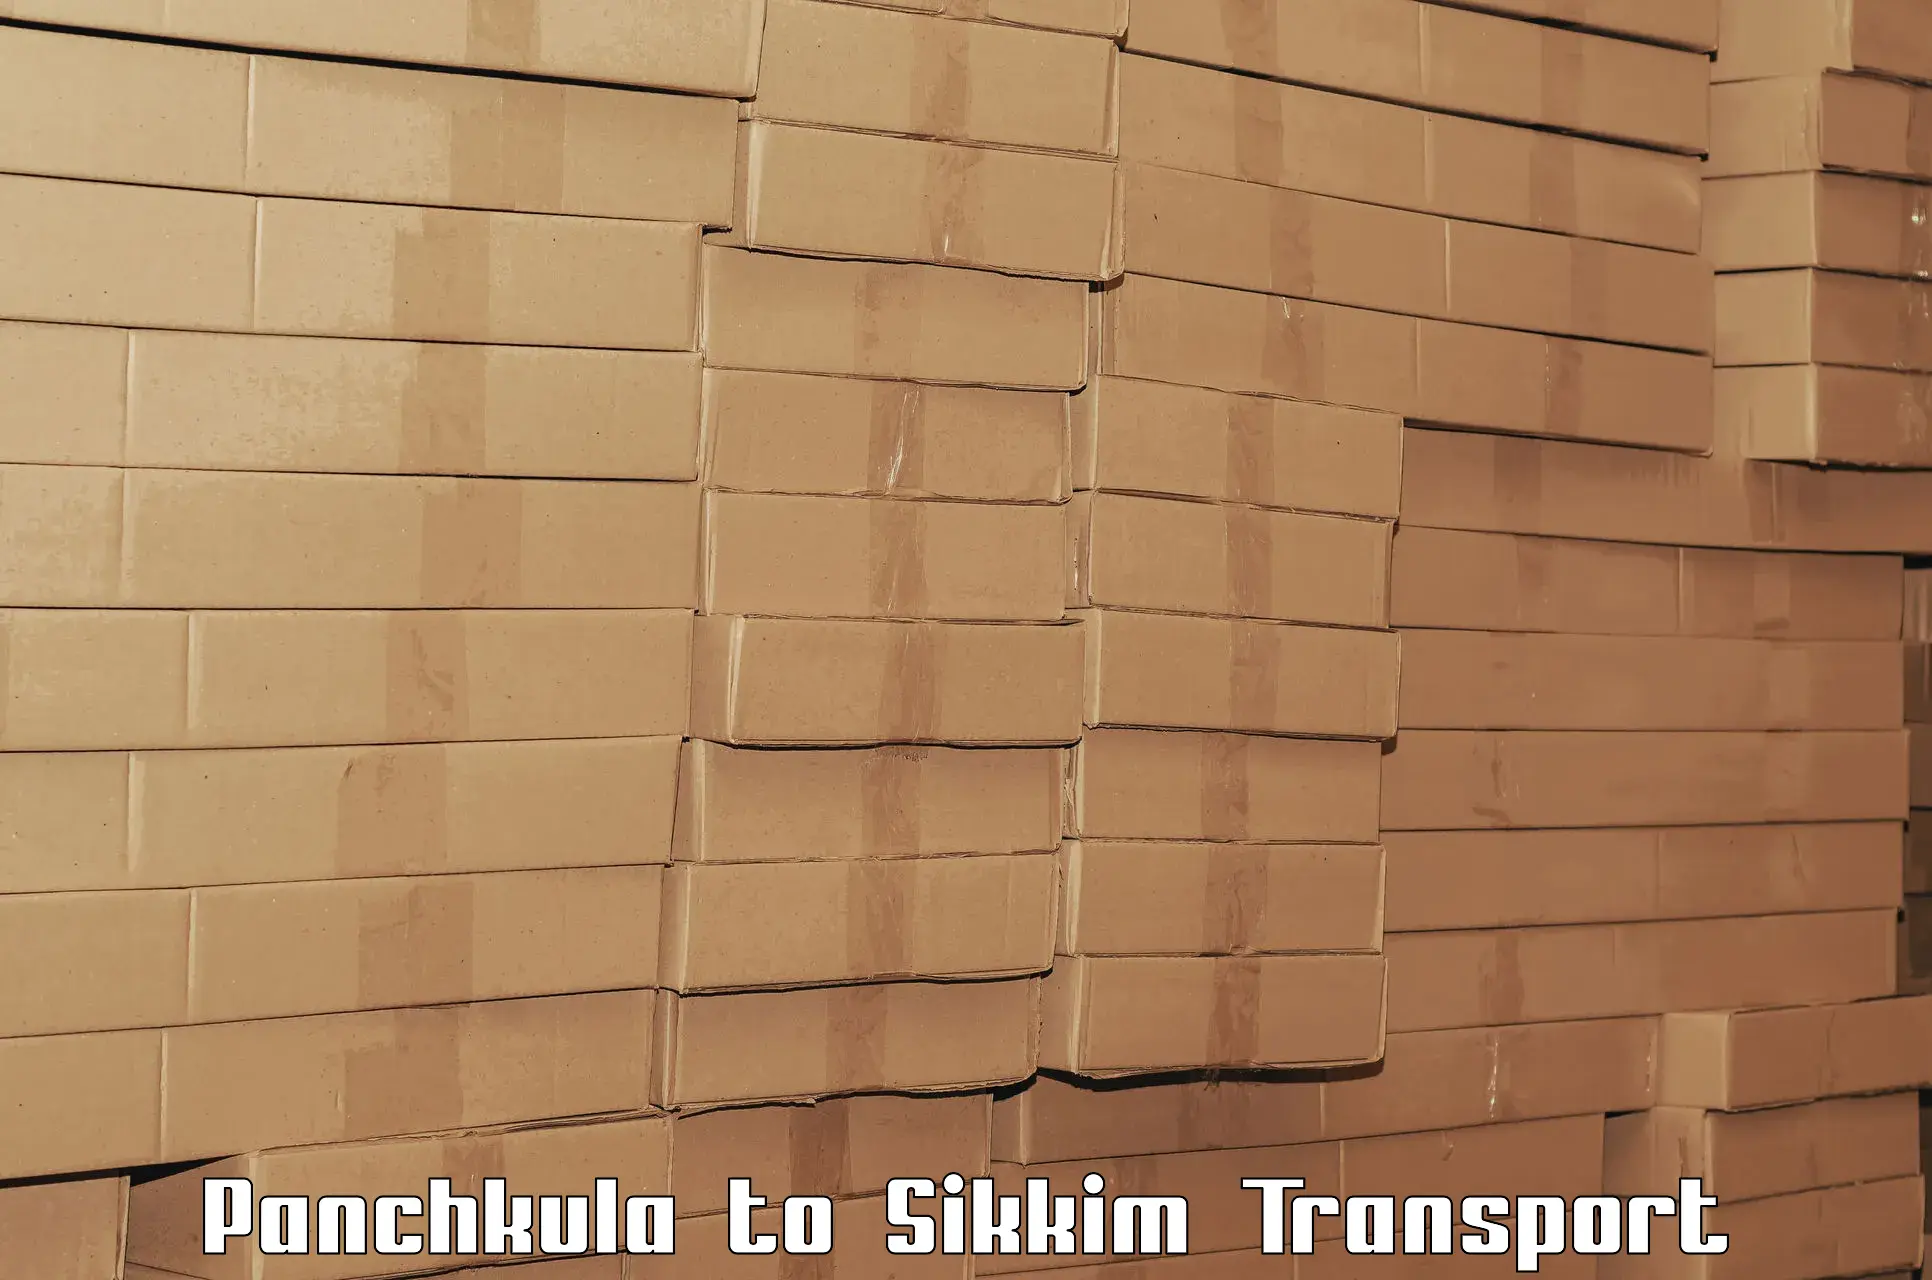 Bike transport service Panchkula to Sikkim